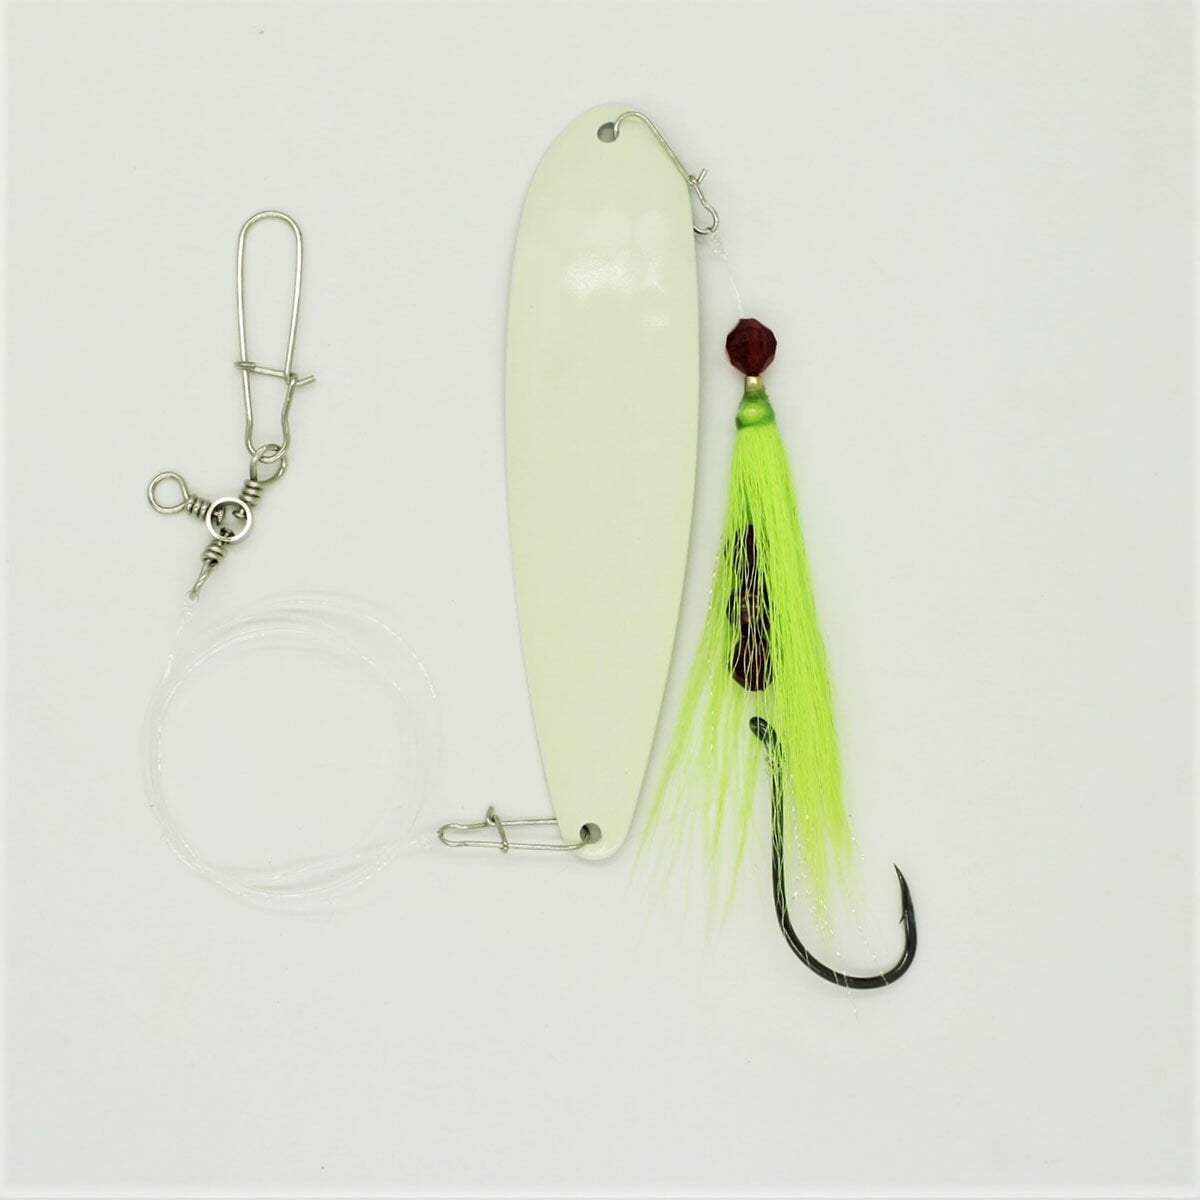 SeaSnare Fluke Pro - Original 3-Way Swivel Single Hook Spoon Rig